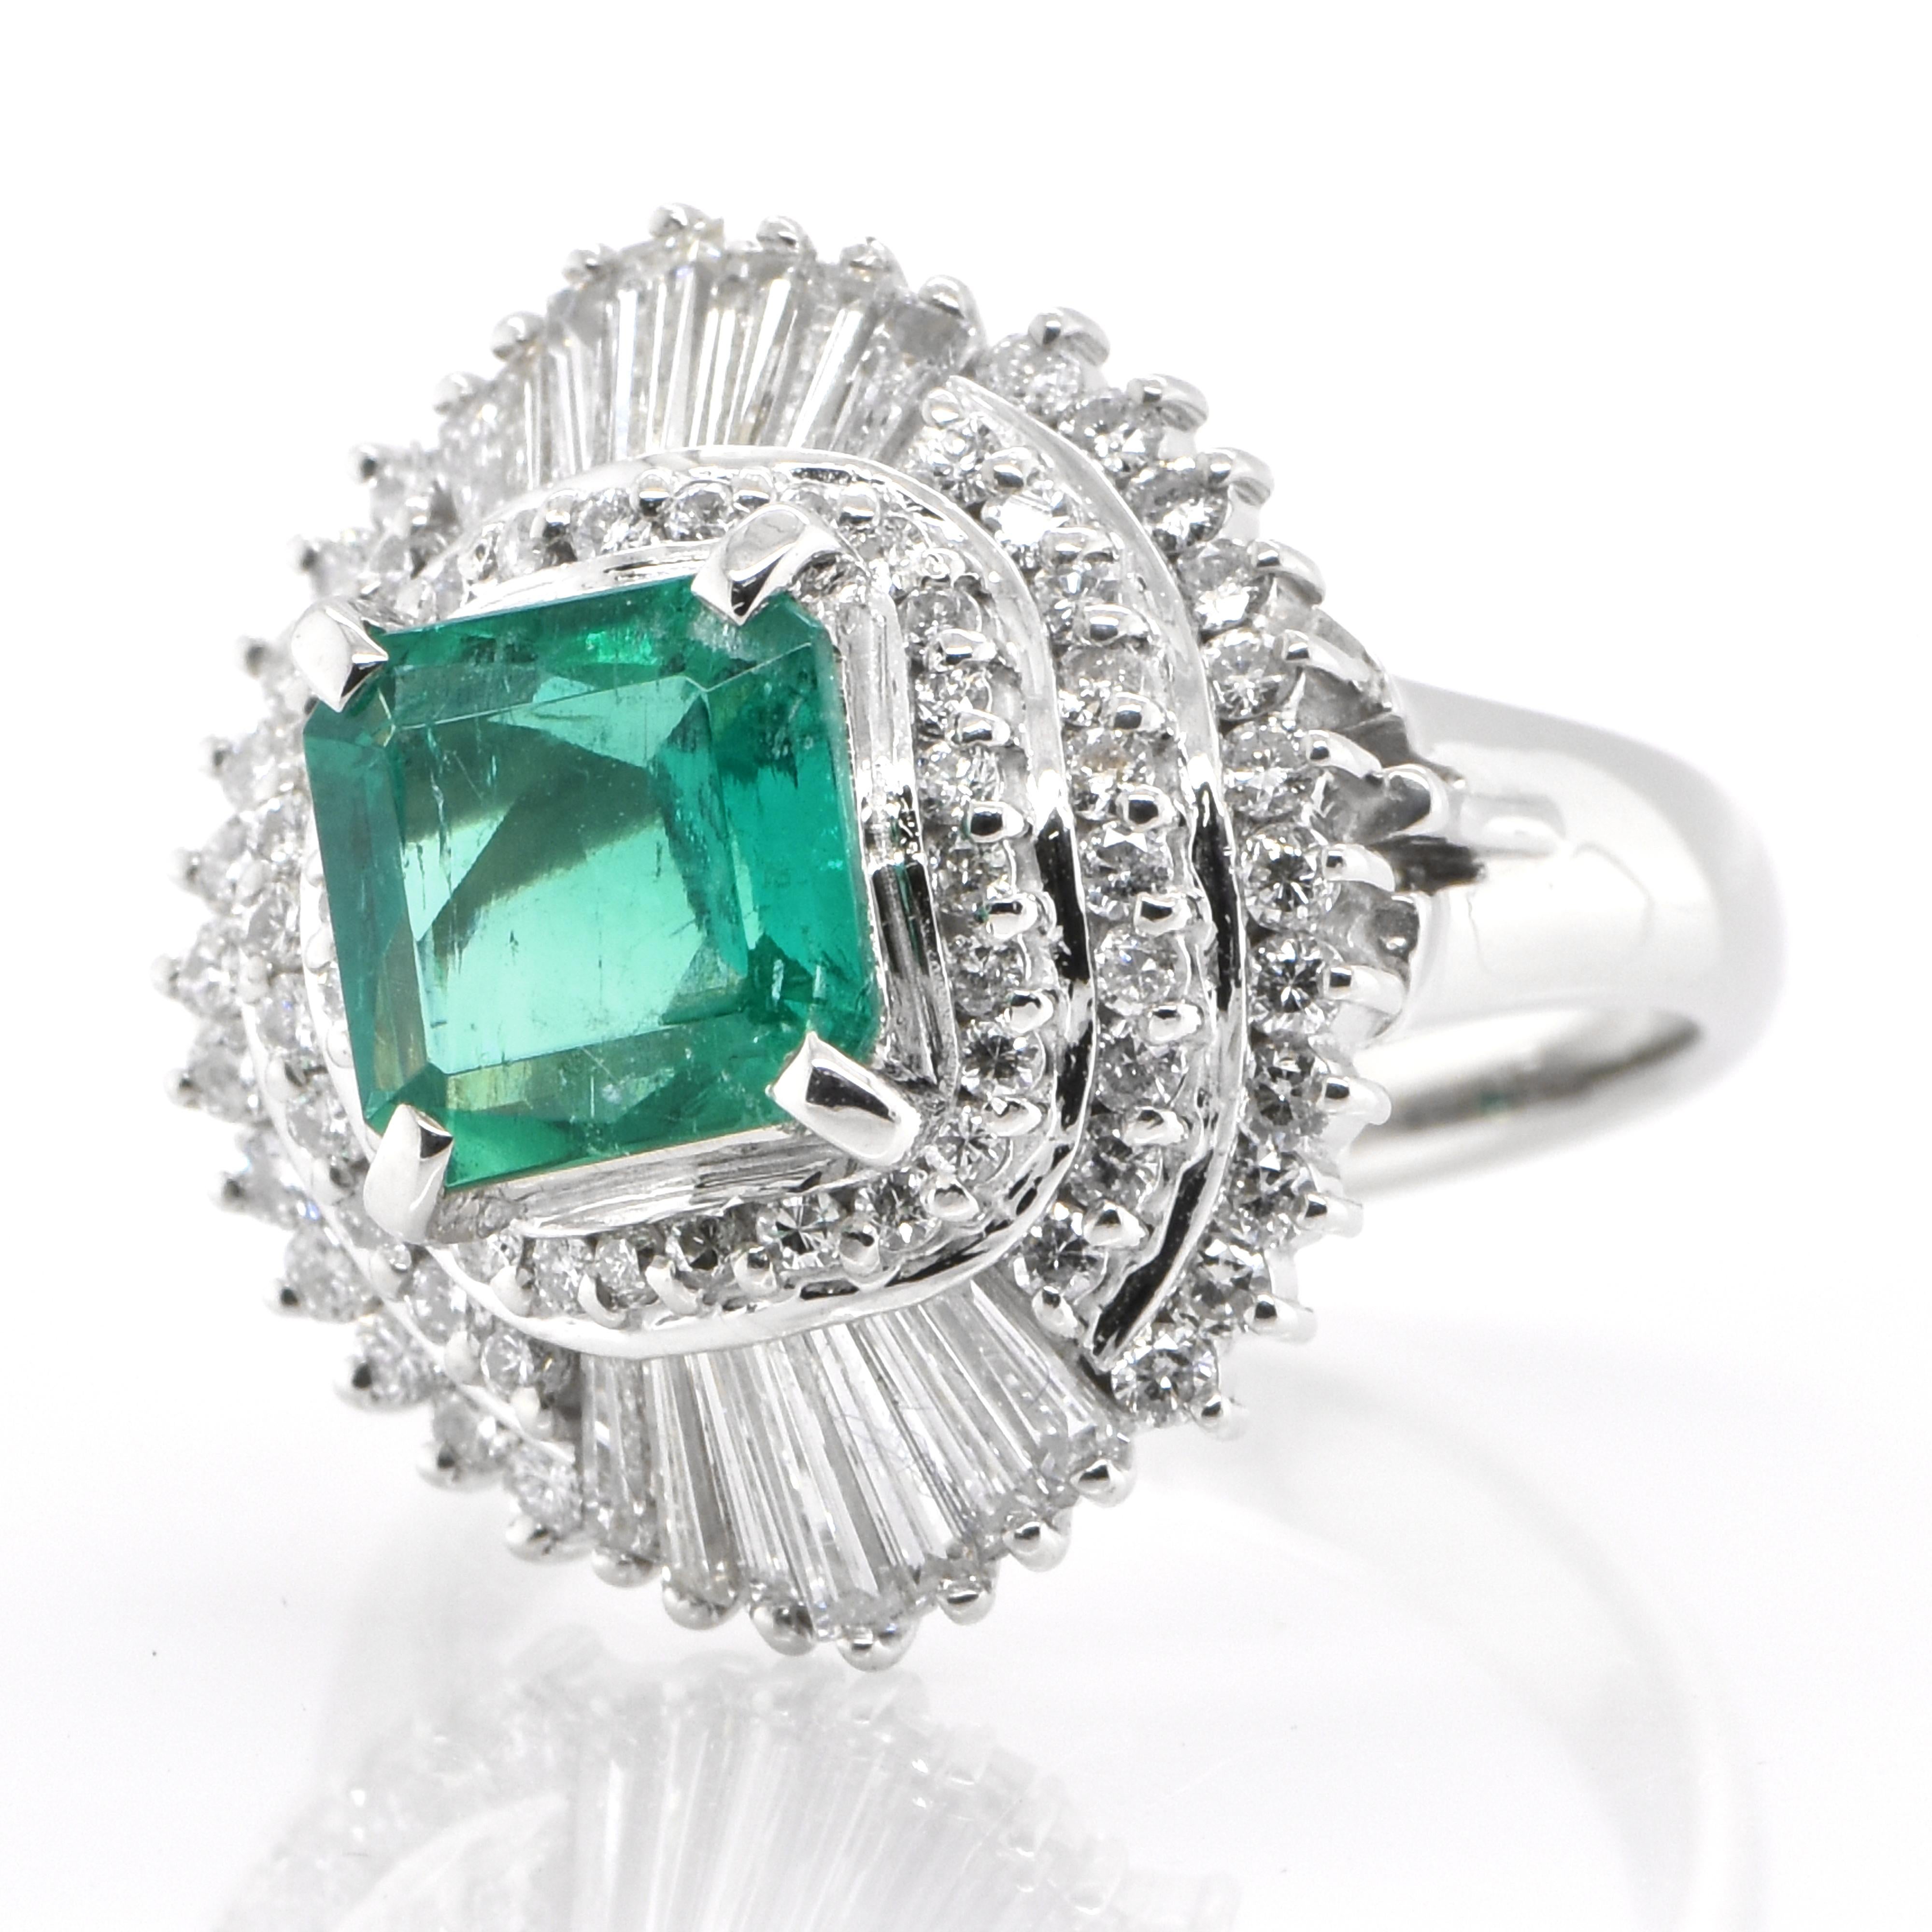 Ein atemberaubender Ring mit einem natürlichen Smaragd von 1,60 Karat und Diamanten von 1,05 Karat in Platin eingefasst. Seit Tausenden von Jahren bewundern die Menschen das Grün des Smaragds. Smaragde werden seit jeher mit den üppigsten